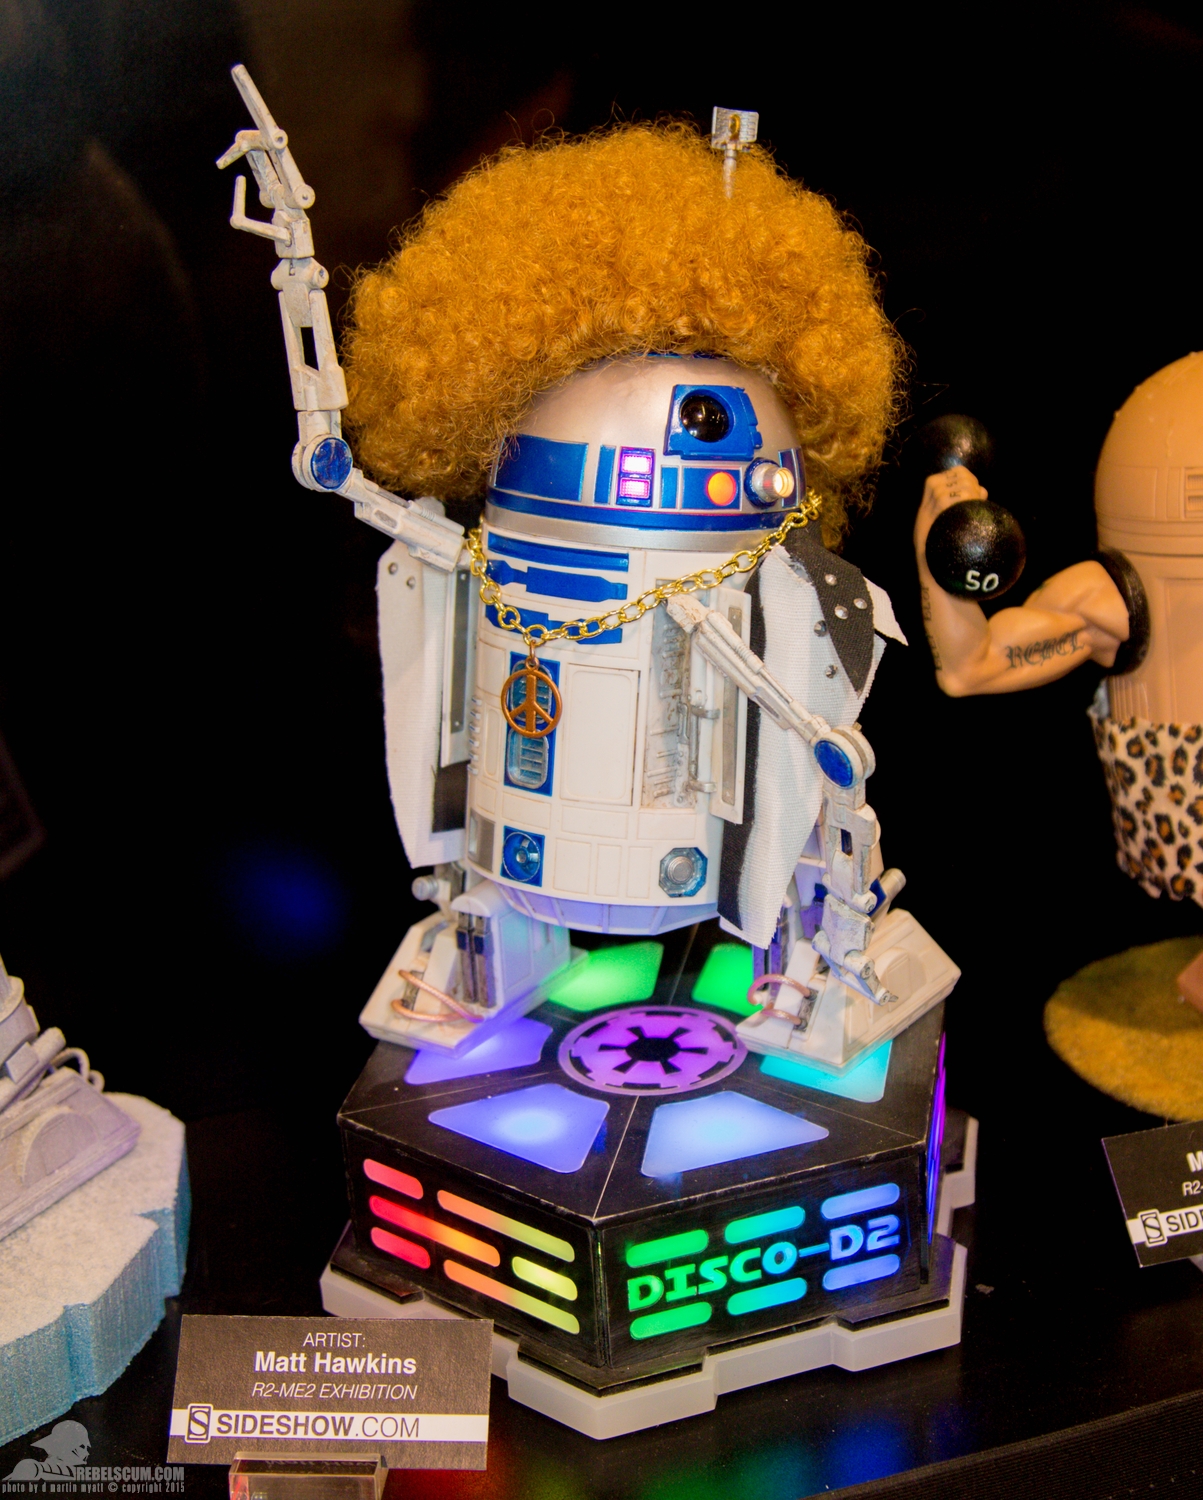 Star-Wars-Celebration-Anaheim-2015-Sideshow-R2-Me2-Exhibit-027.jpg